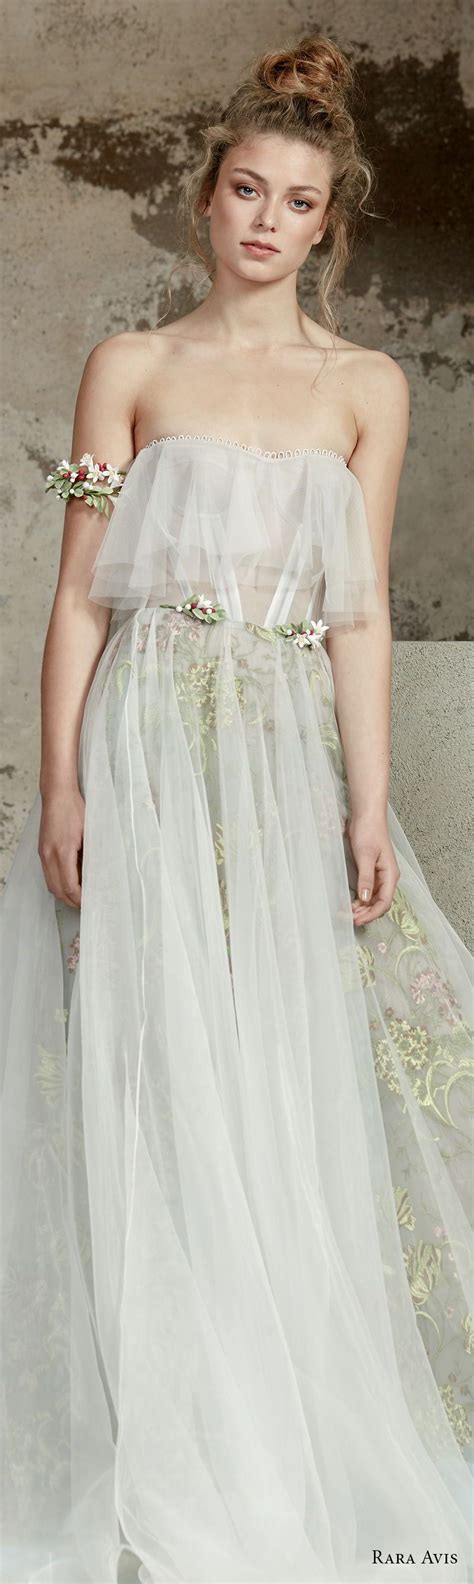 rara avis 2017 bridal strapless semi sweetheart neckline tulle bodice tulle skirt romantic soft